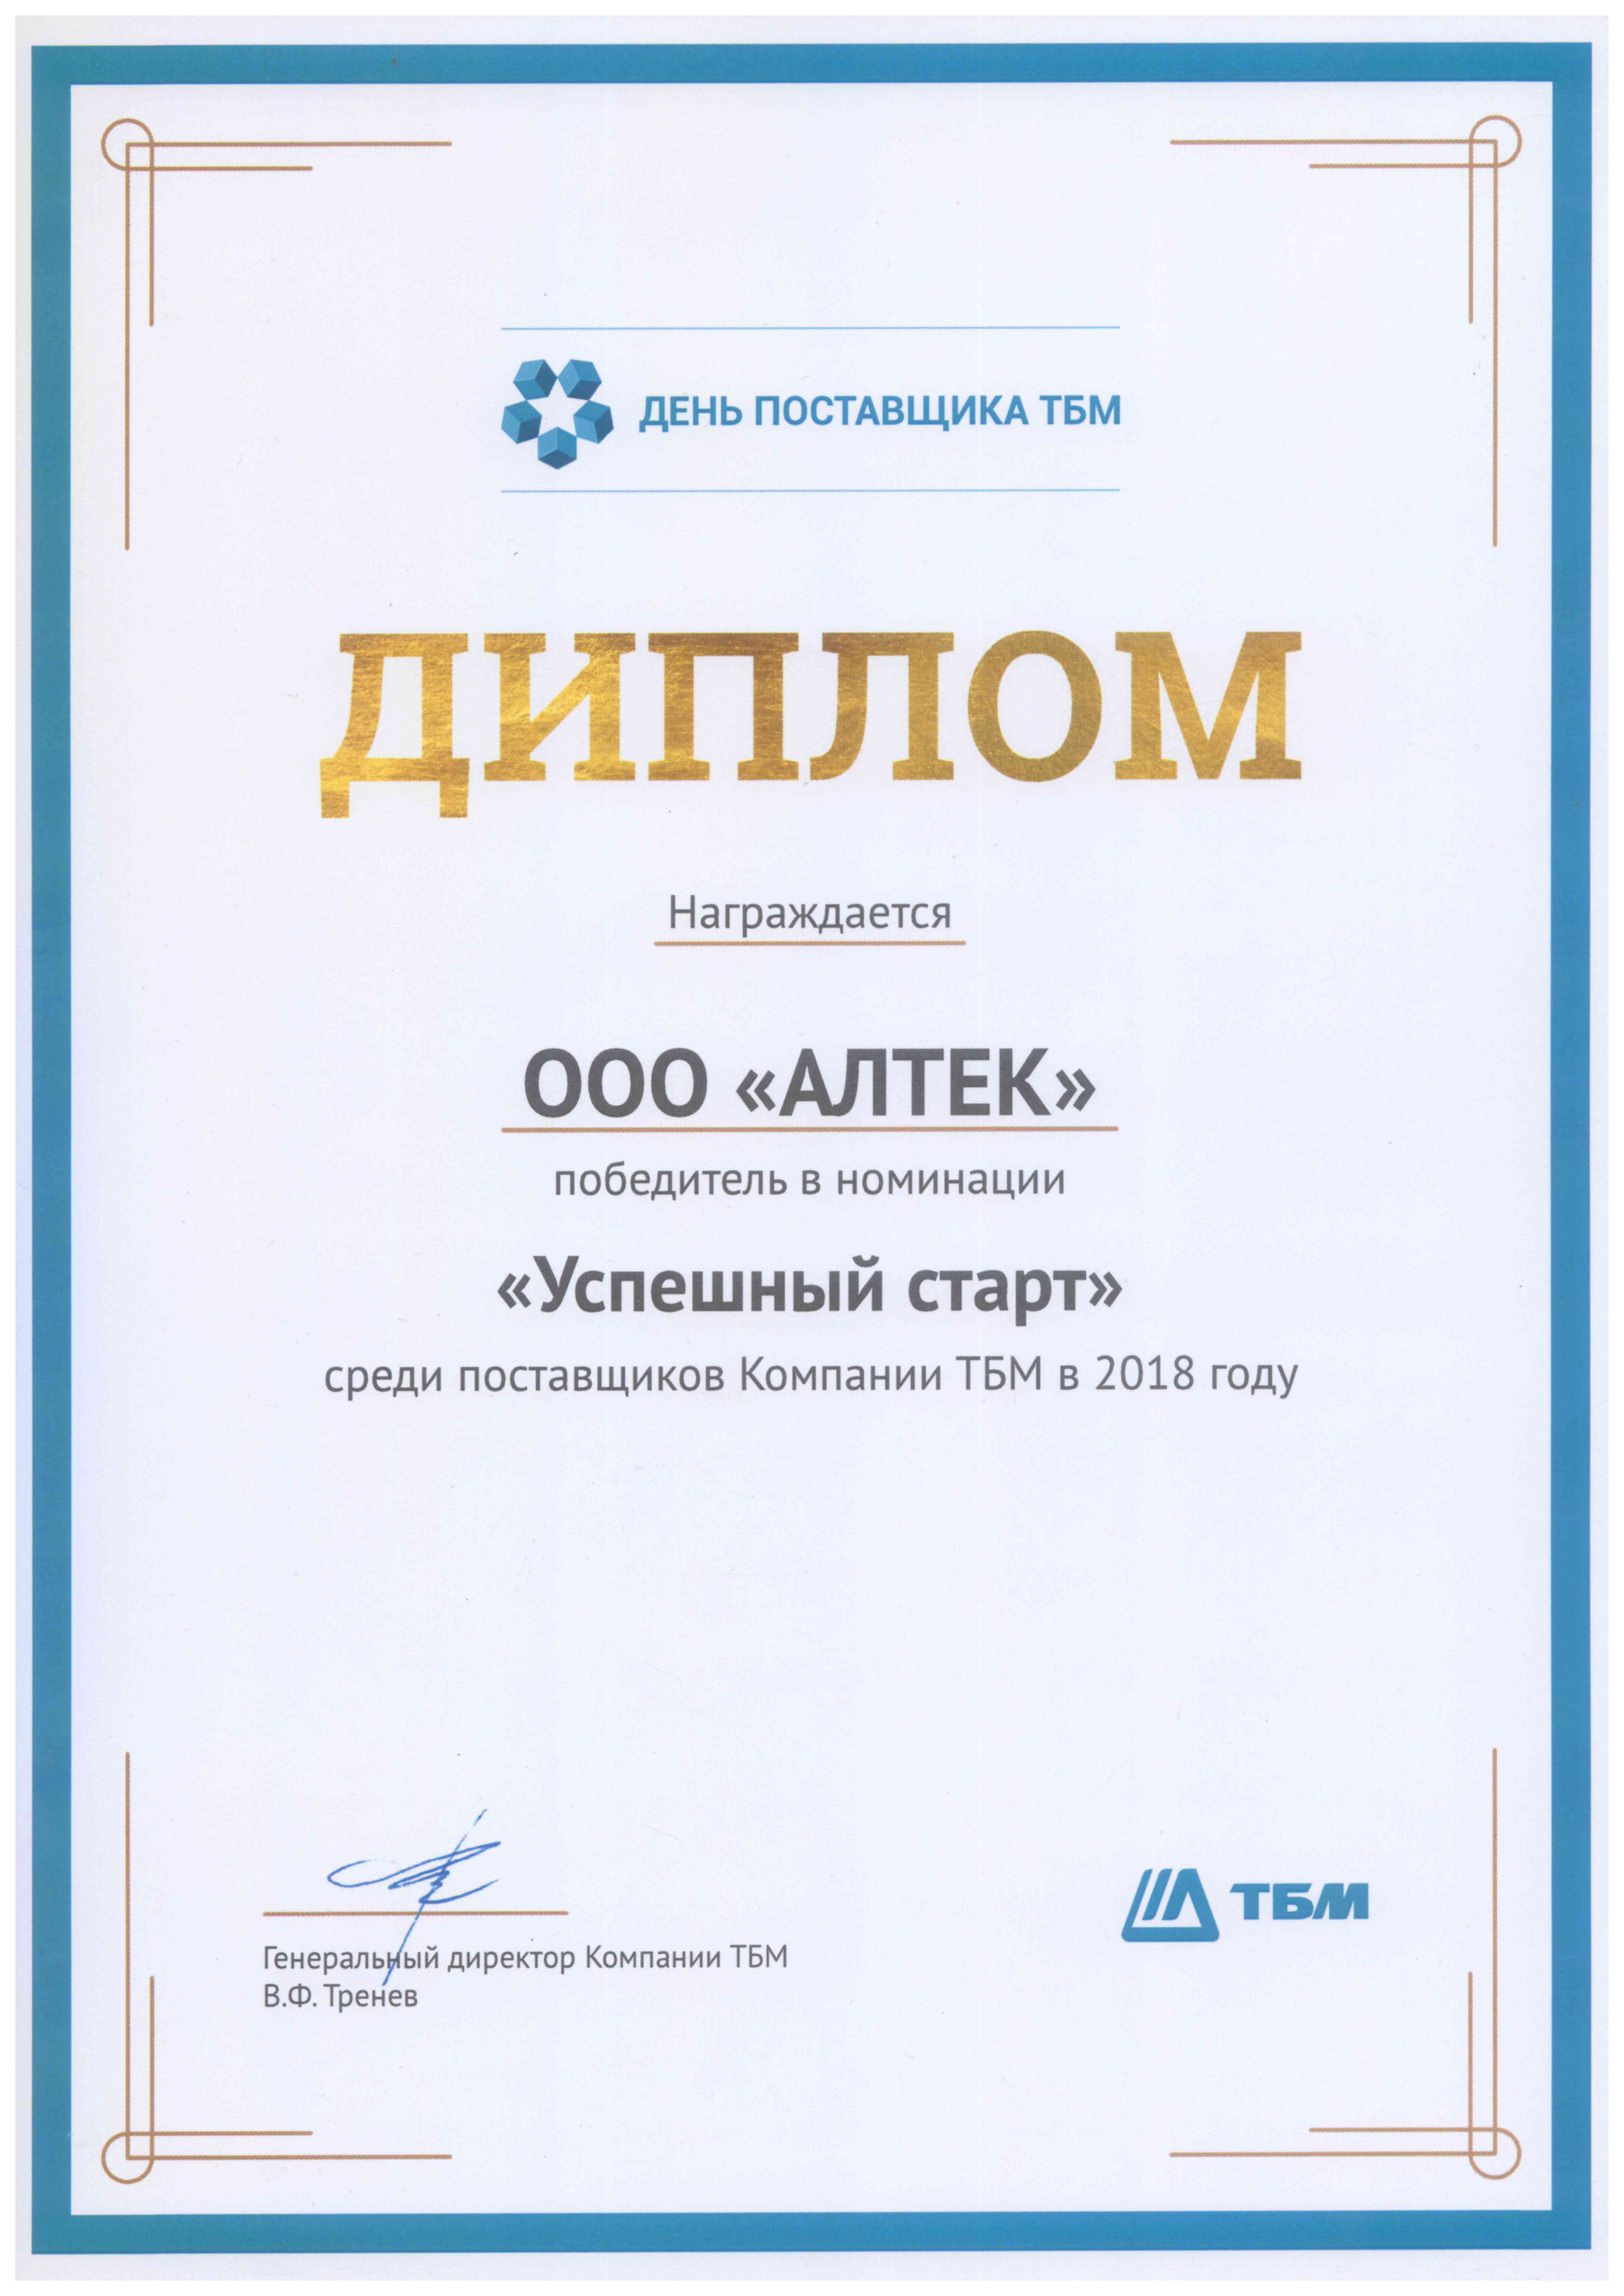 Победитель в номинации «Успешный старт» среди поставщиков Компании ТБМ в 2018 г.